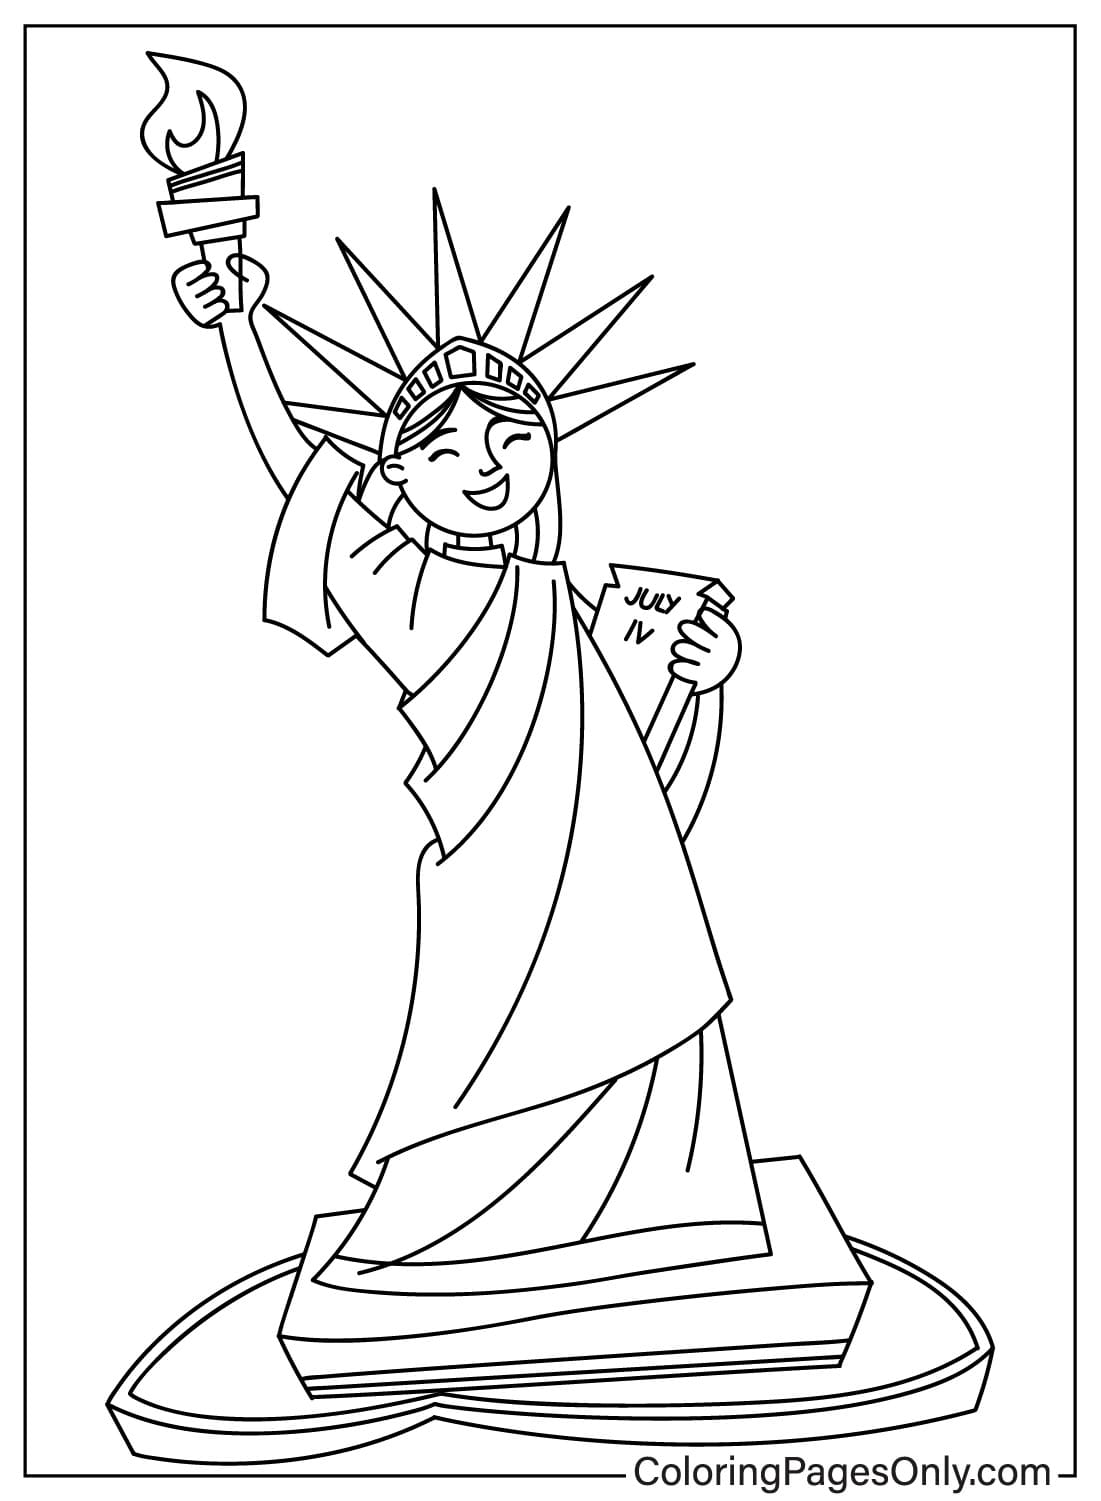 صفحات تلوين تمثال الحرية للتحميل من تمثال الحرية